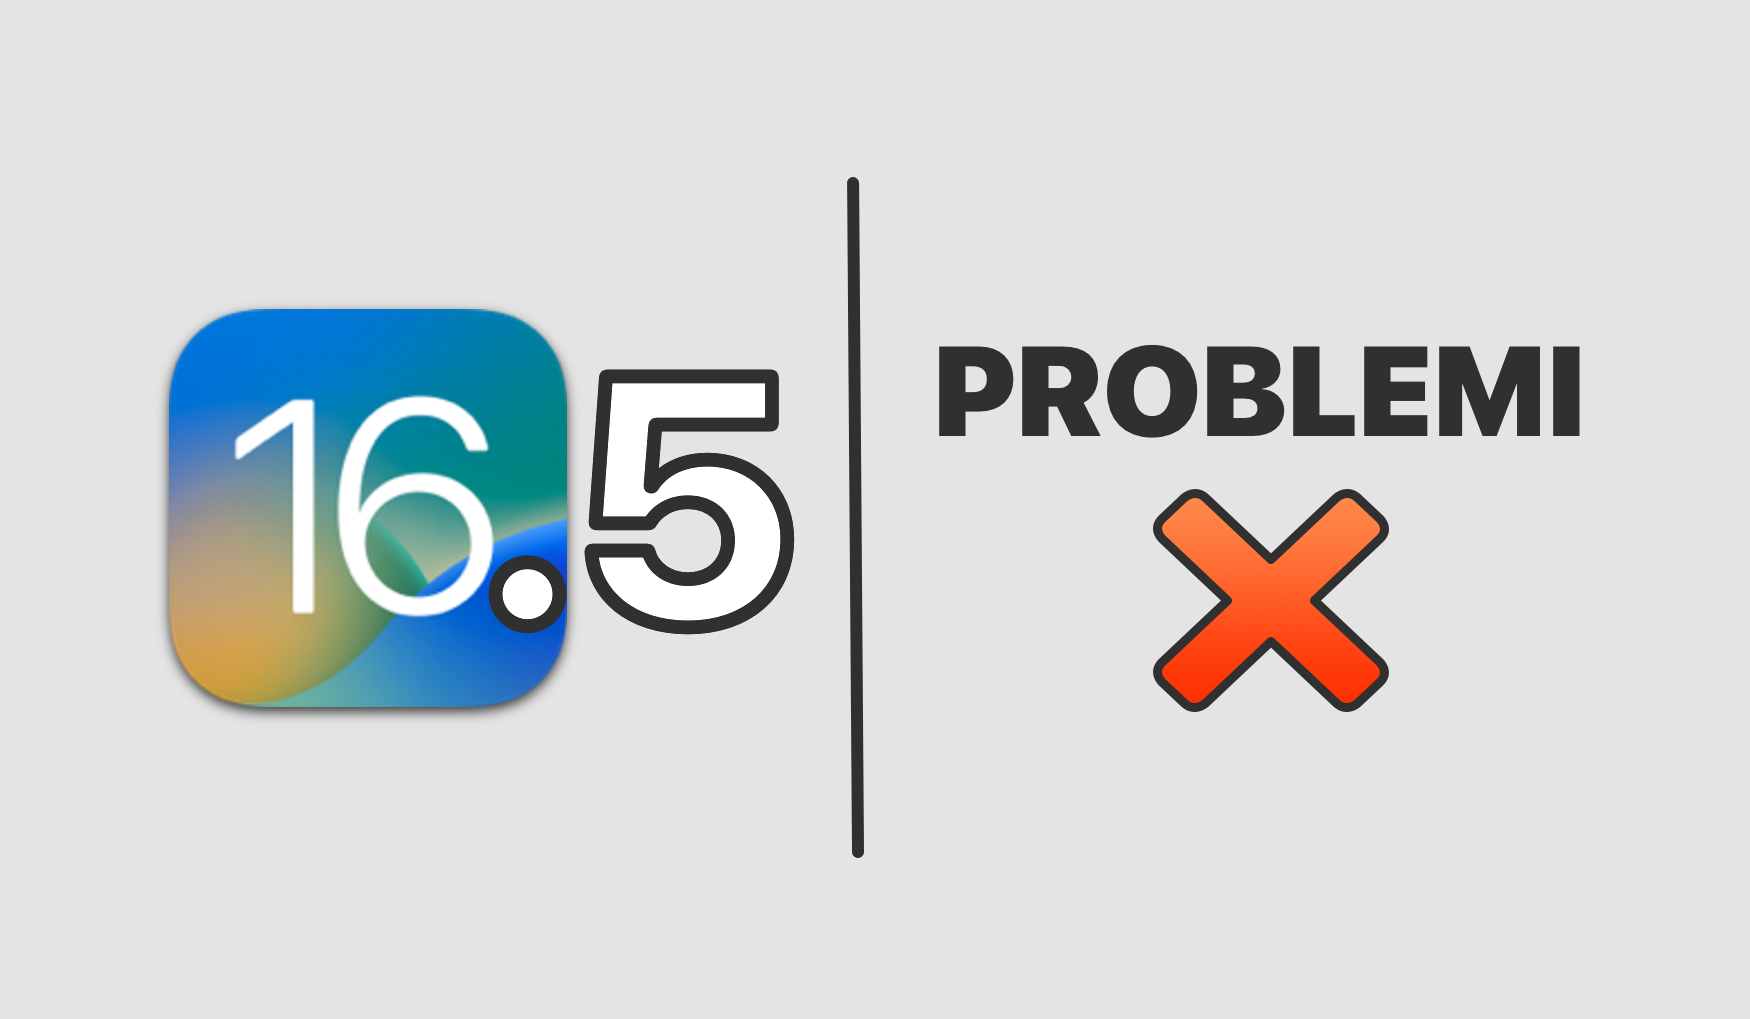 iOS 16.5: Problemi anticipati su iPhone?